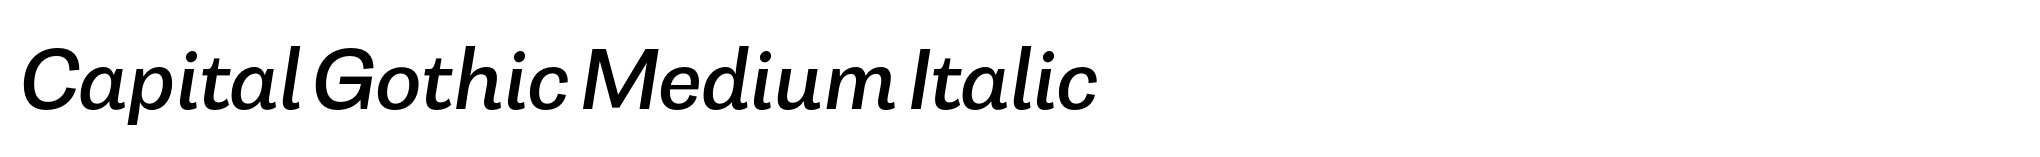 Capital Gothic Medium Italic image